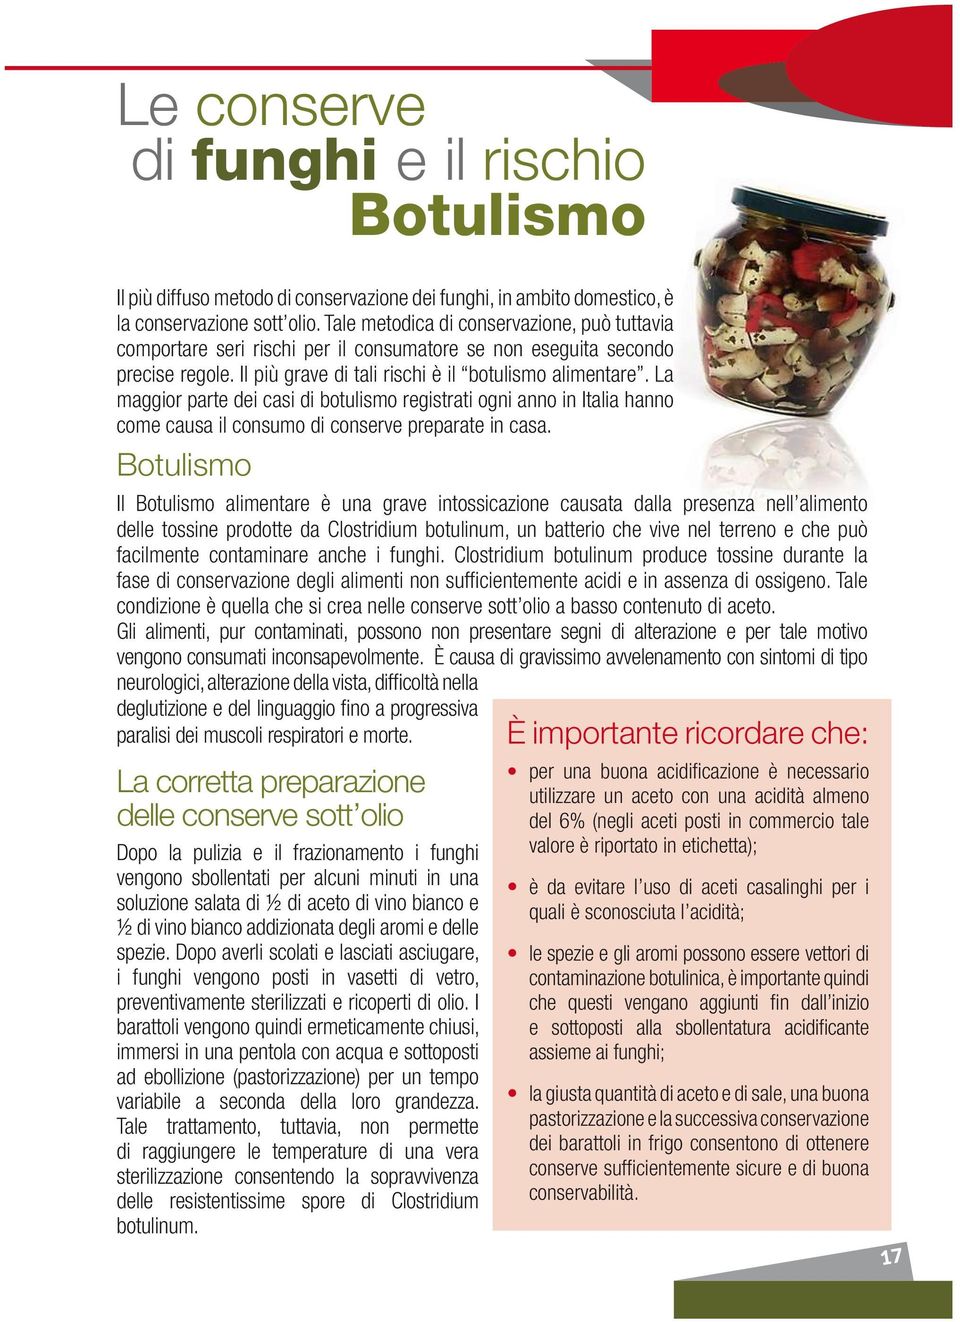 La maggior parte dei casi di botulismo registrati ogni anno in Italia hanno come causa il consumo di conserve preparate in casa.